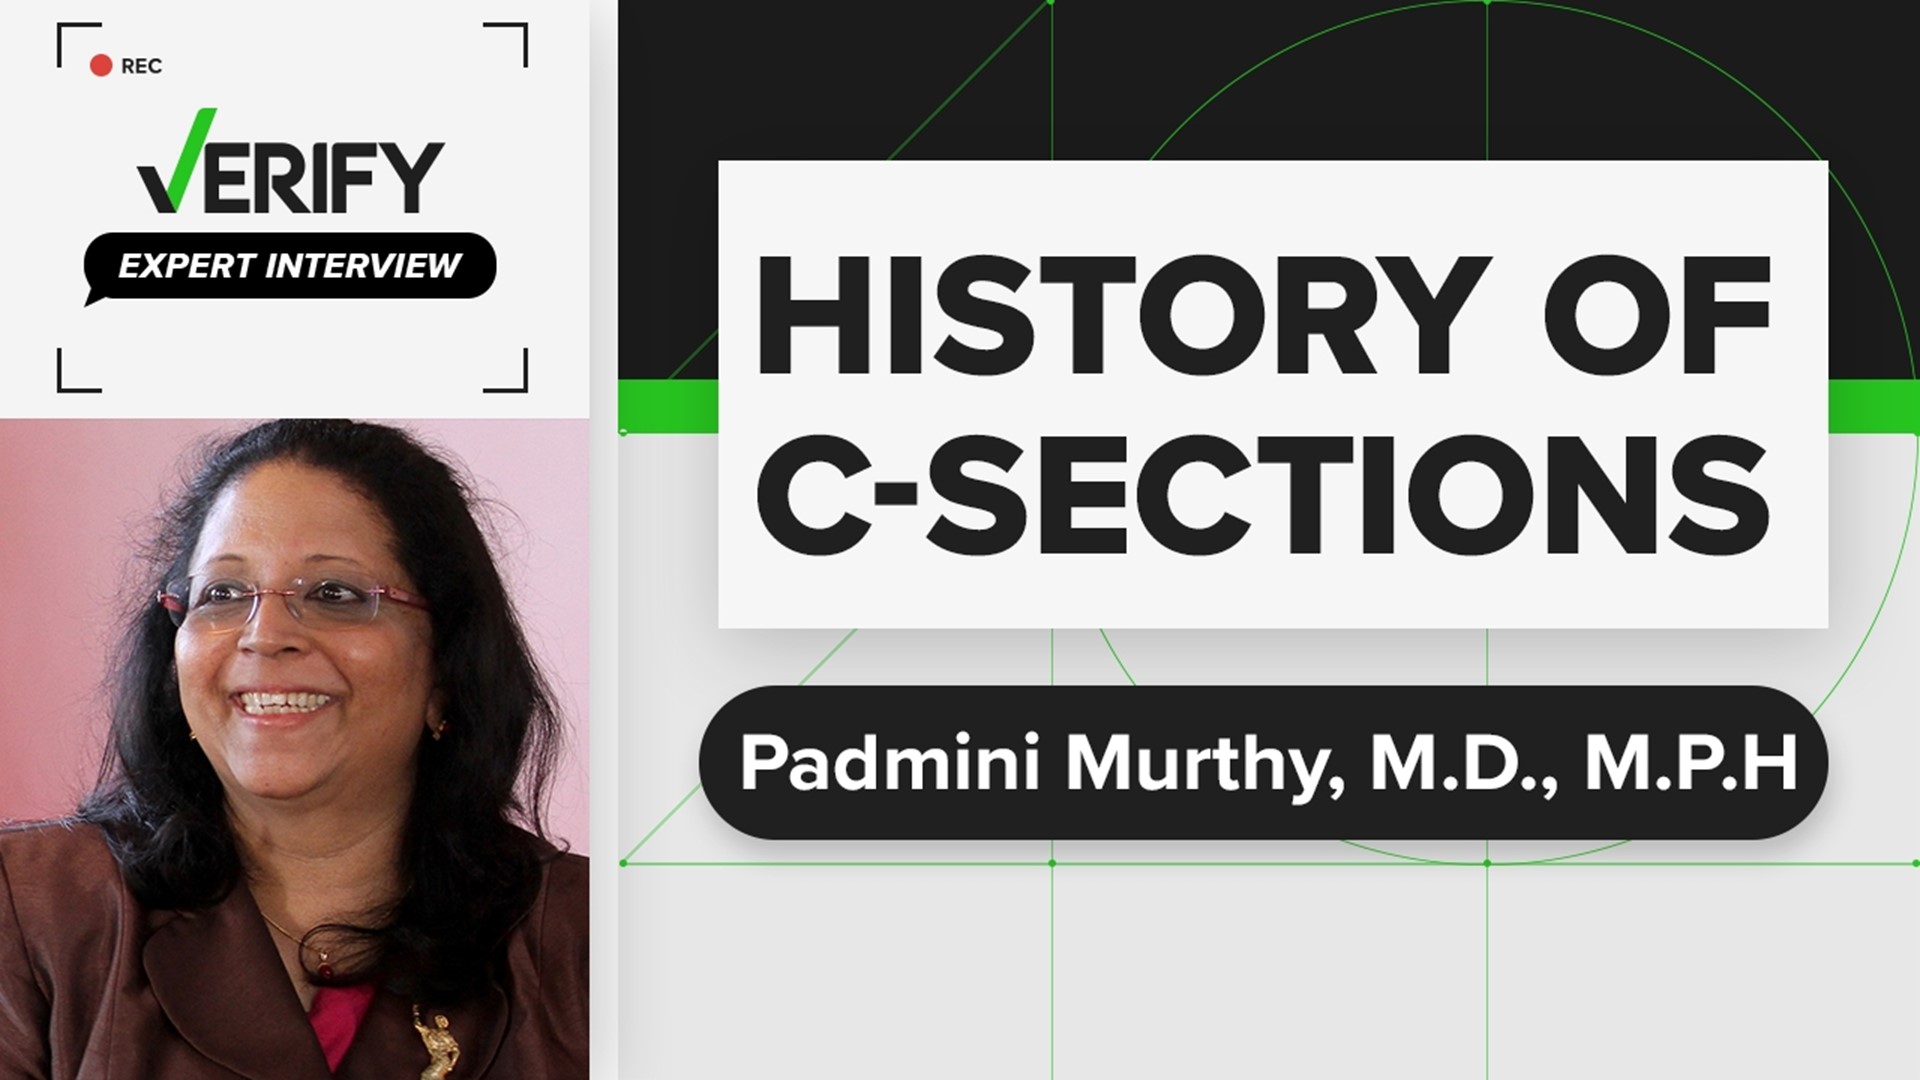 Padmini Murthy, M.D., M.P.H., explains the origin of C-section surgeries.